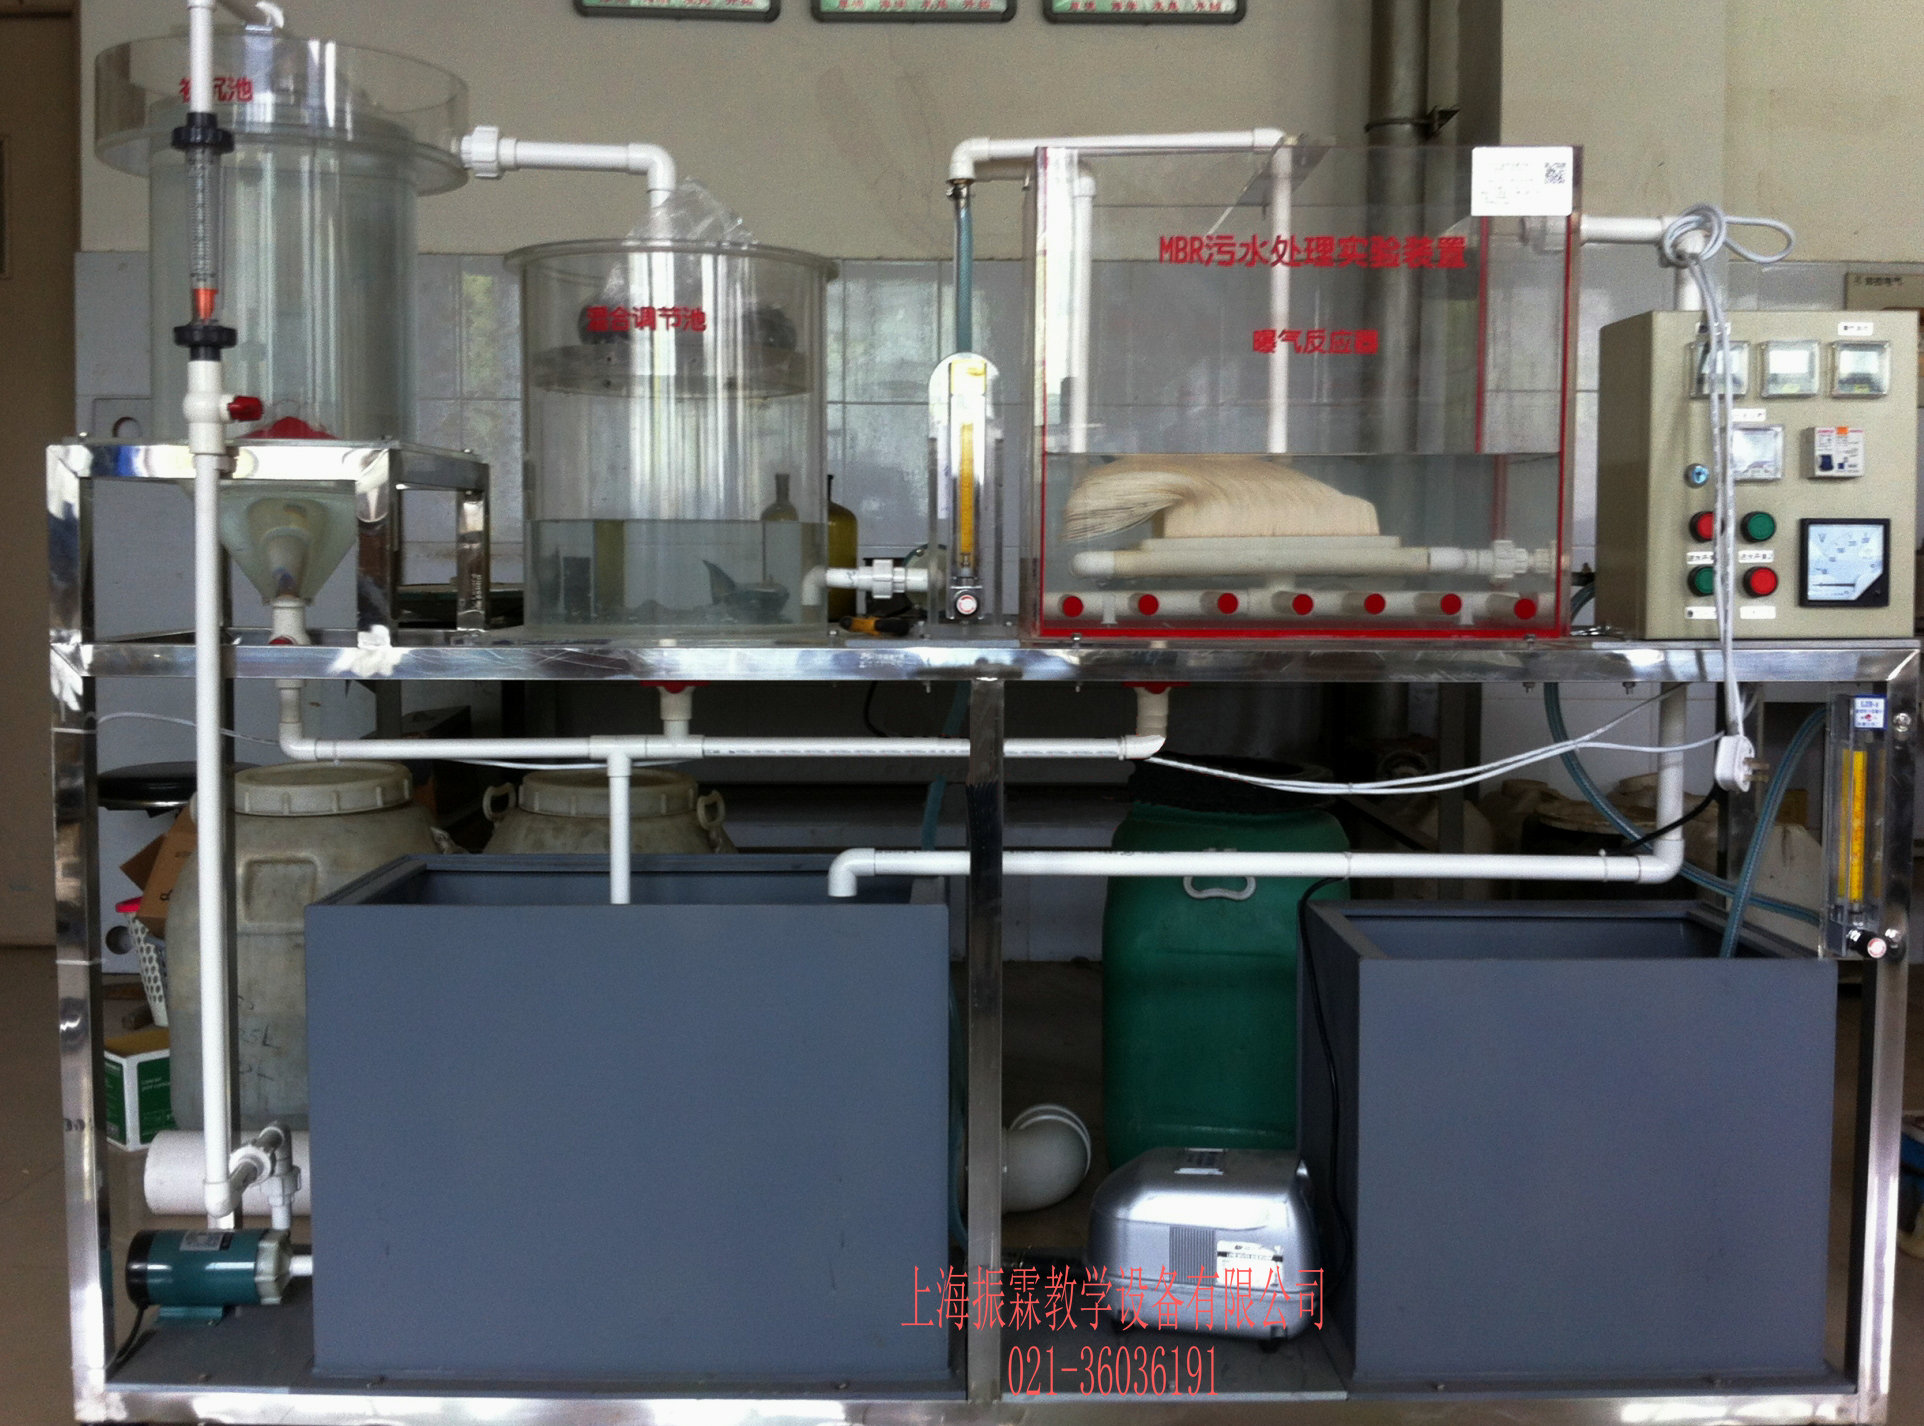 MBR工艺市政污水处理模拟装置,环境工程实训装置--上海振霖公司